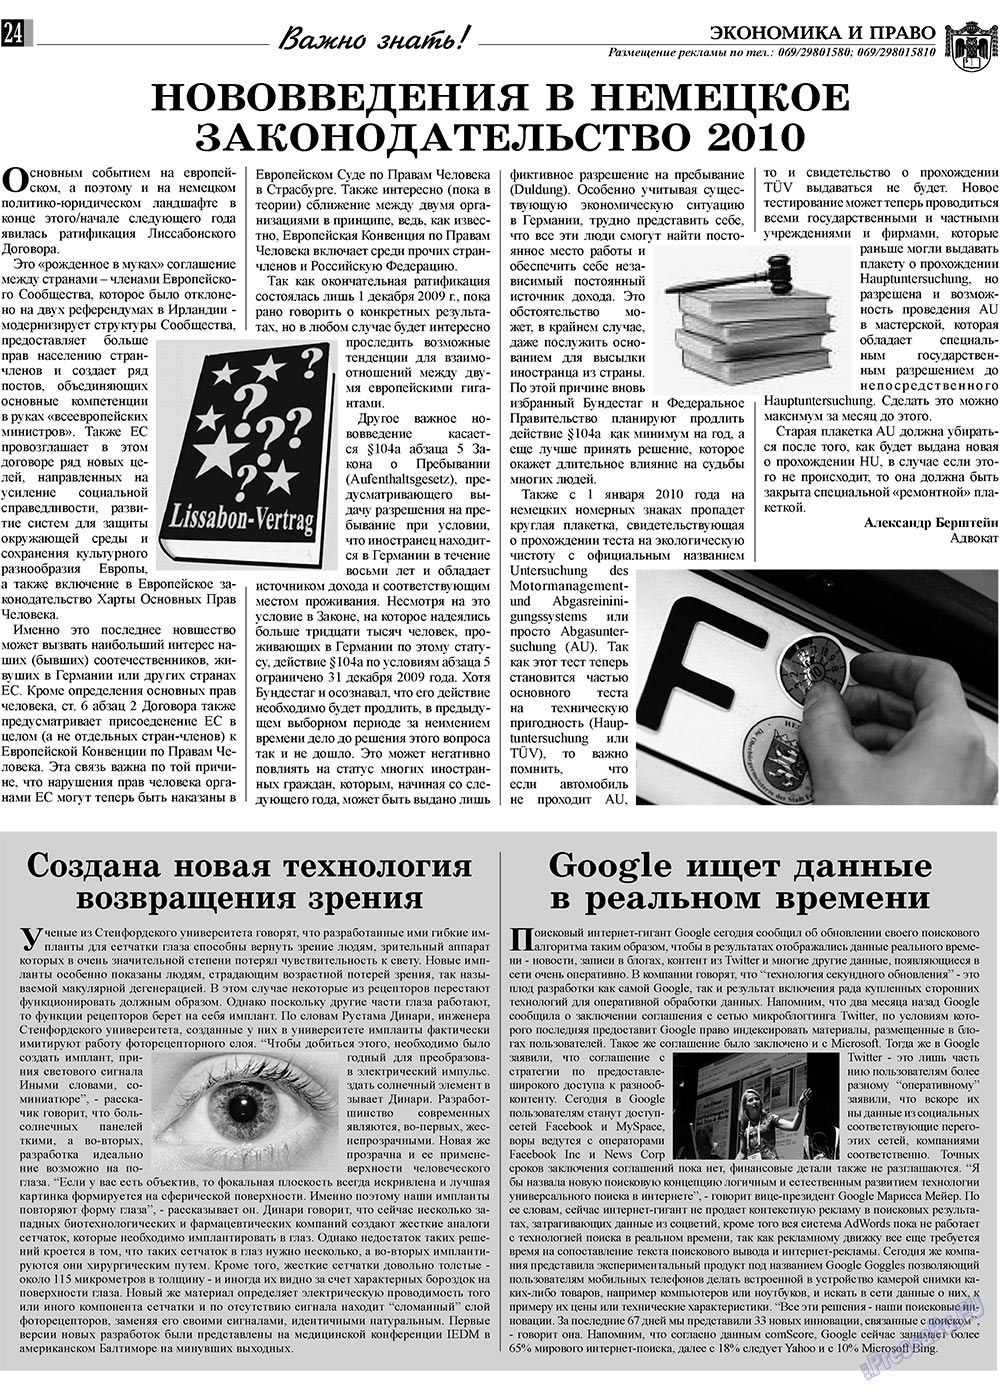 Экономика и право, газета. 2010 №1 стр.24